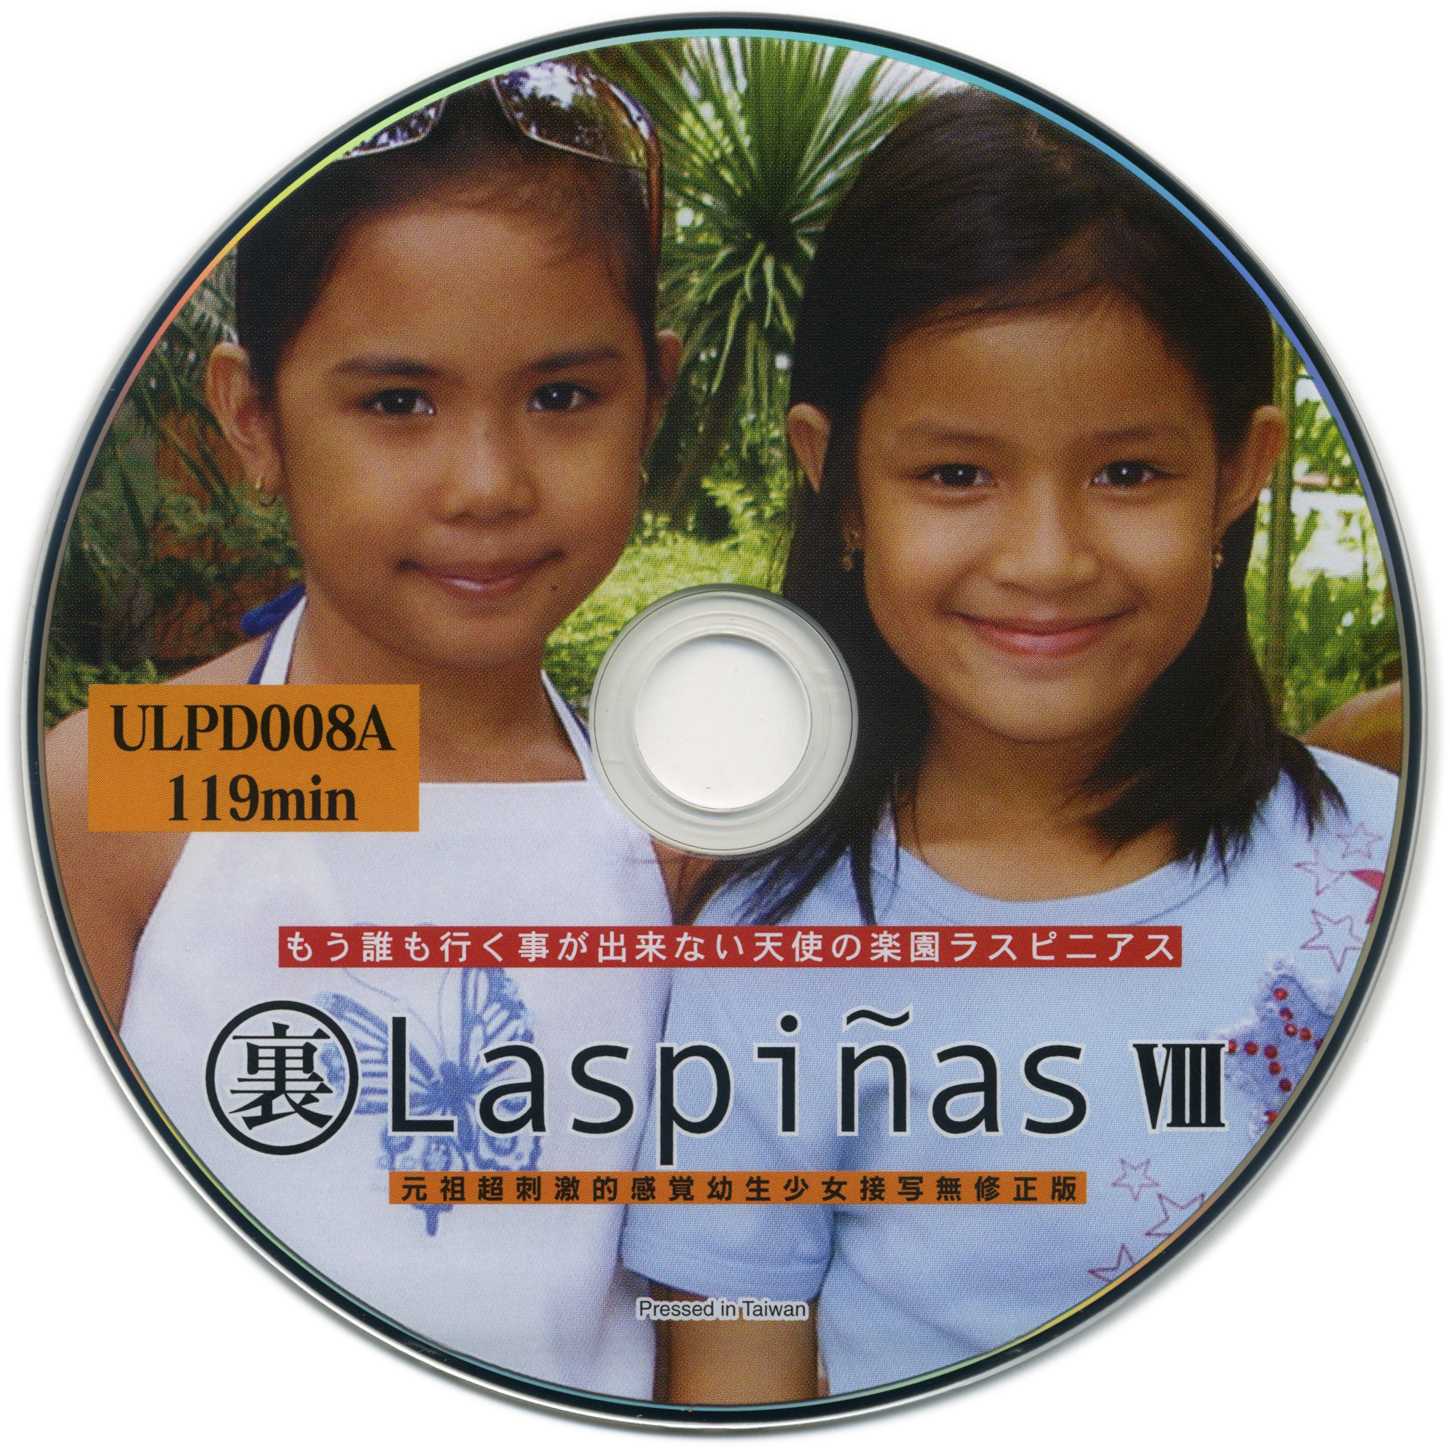 Little girl models young 8 12. Laspinas 6. [Lasd-002] laspinas II. Laspinas 01. Laspinas 08.